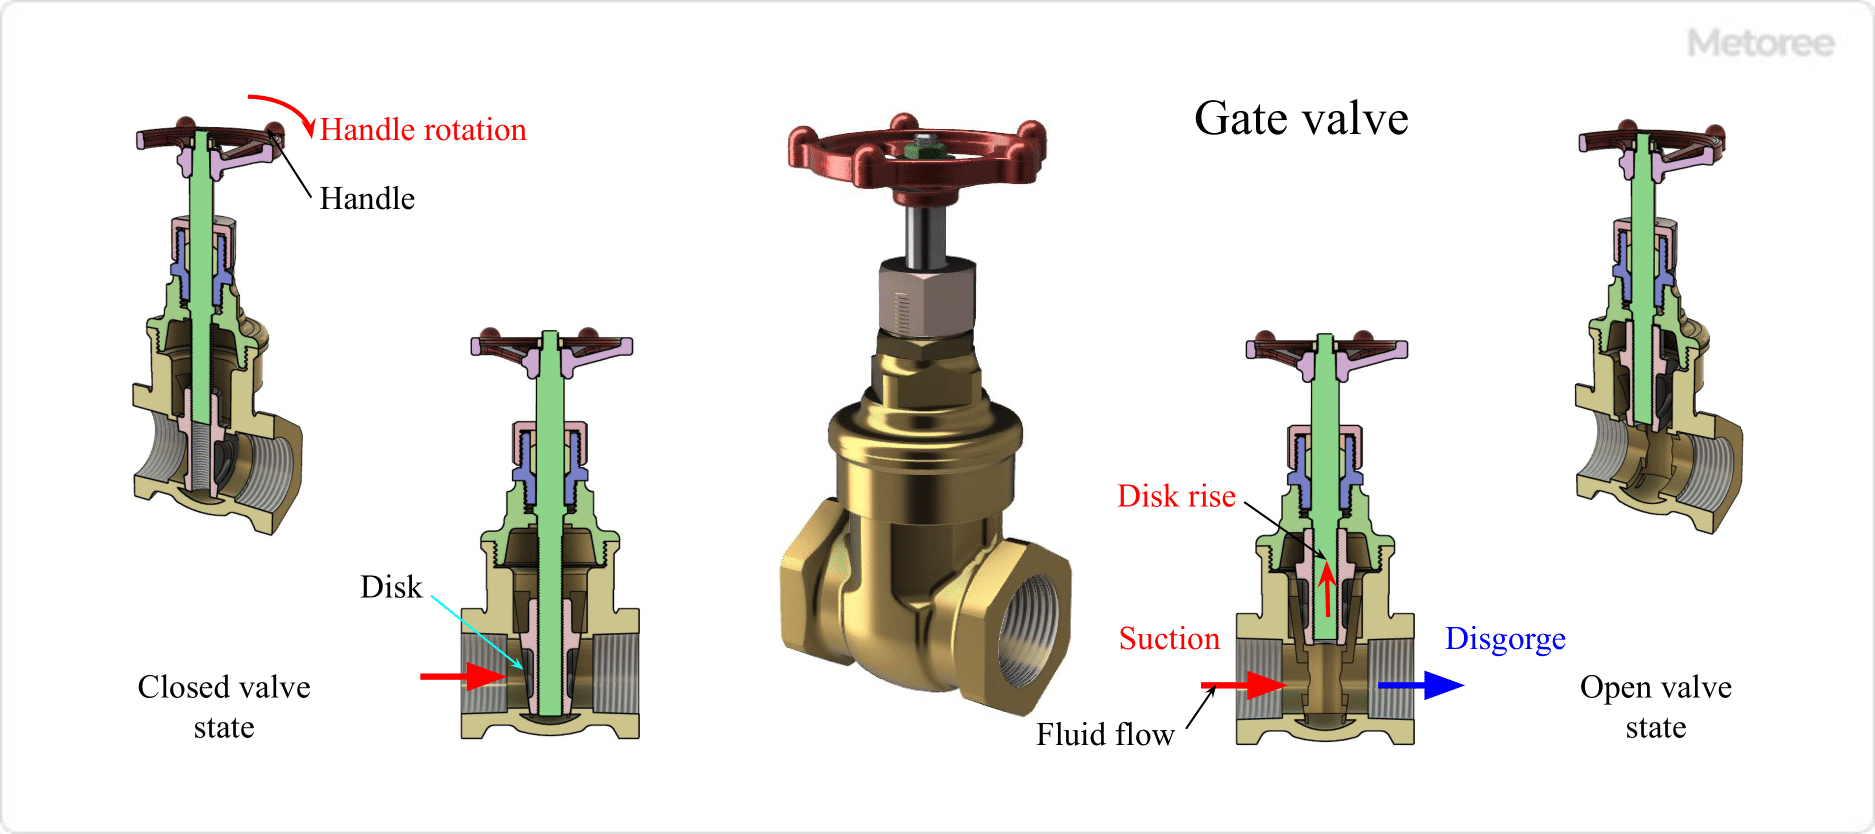 Figure 4. Gate valve